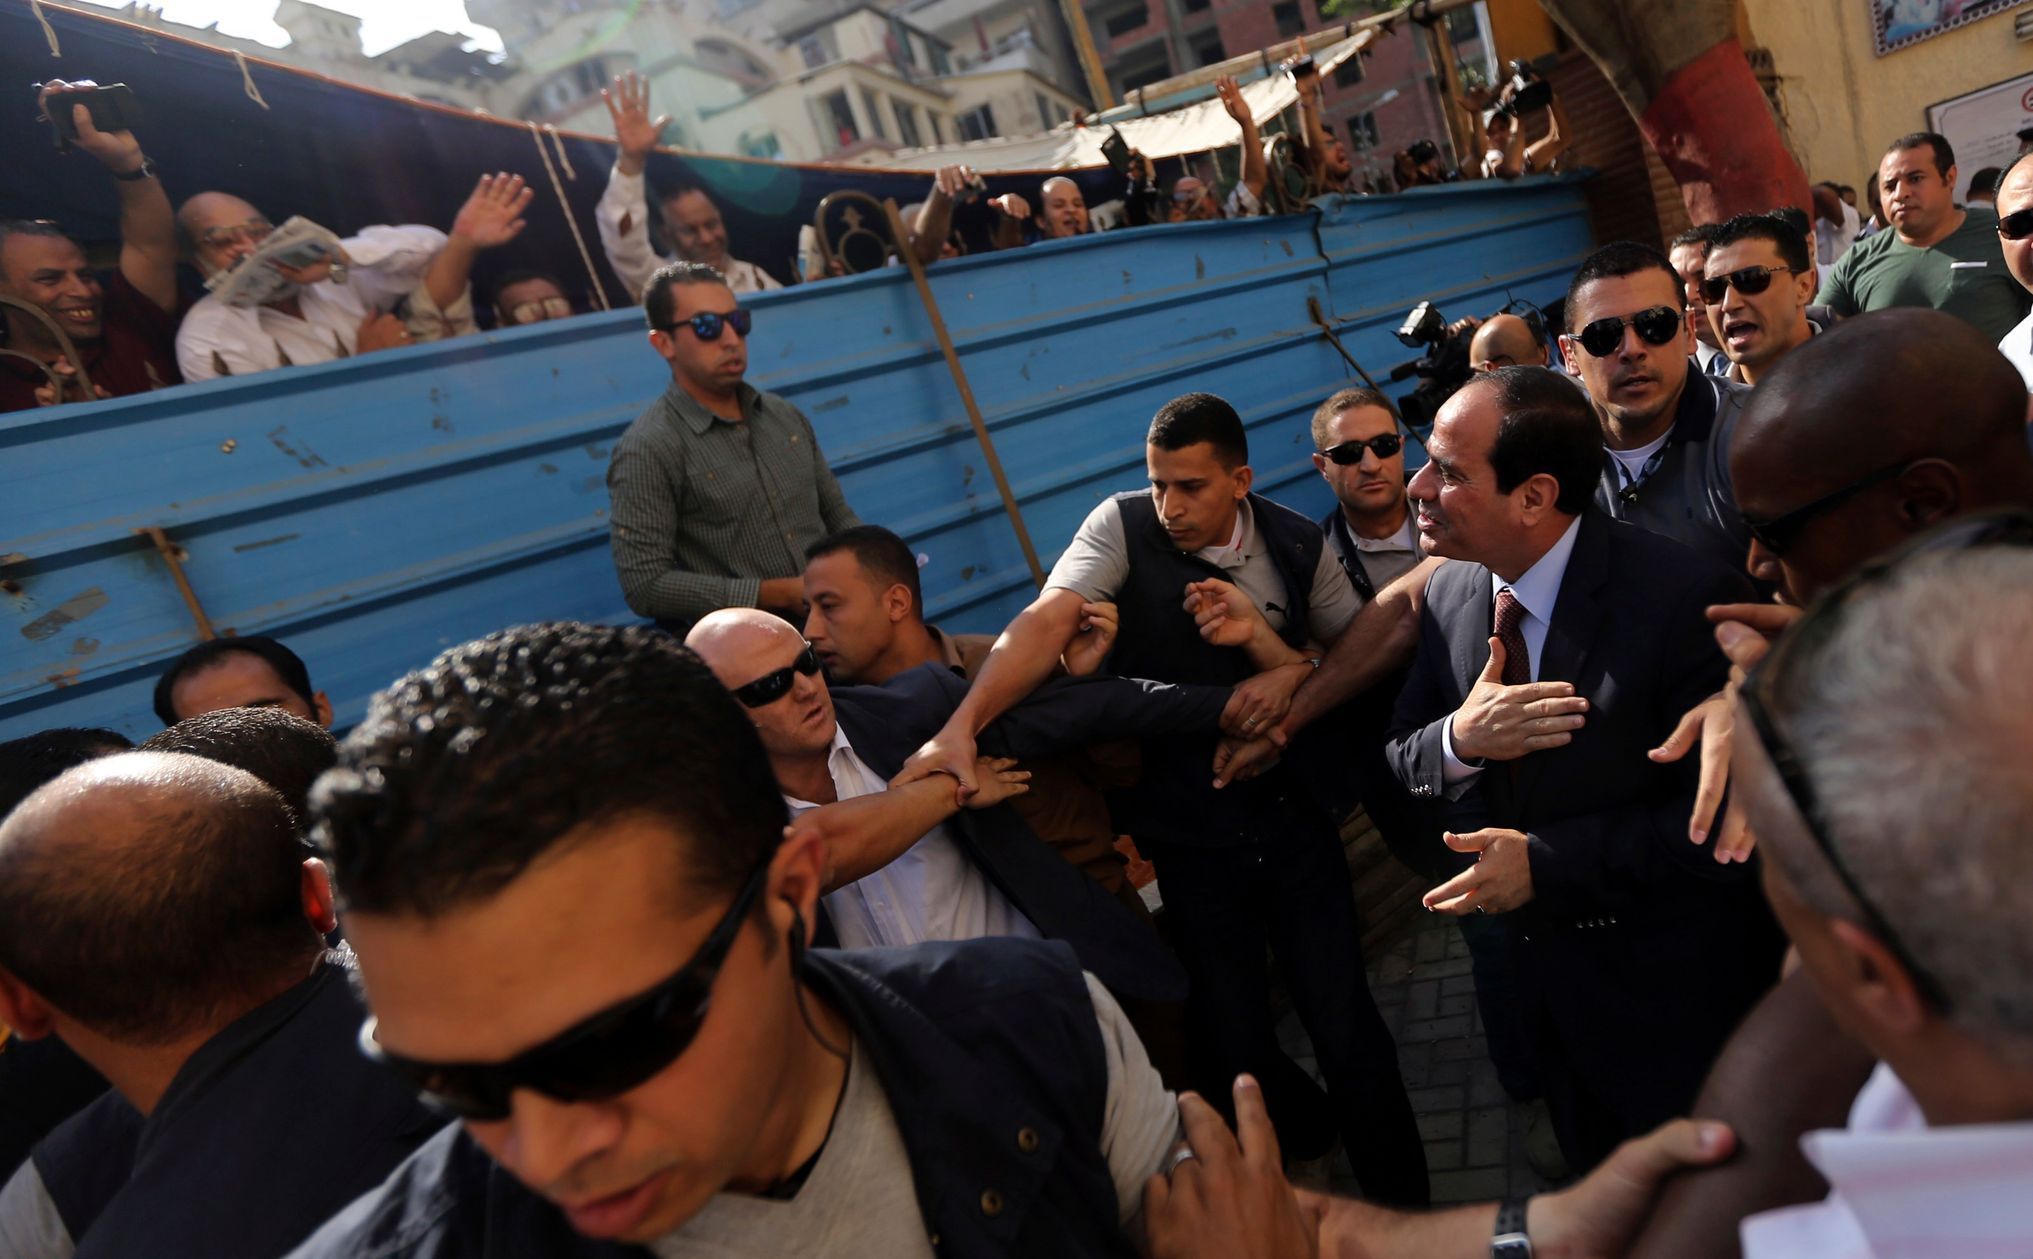 Sísí v kravatě zdraví lidi před volební místností v Káhiře.